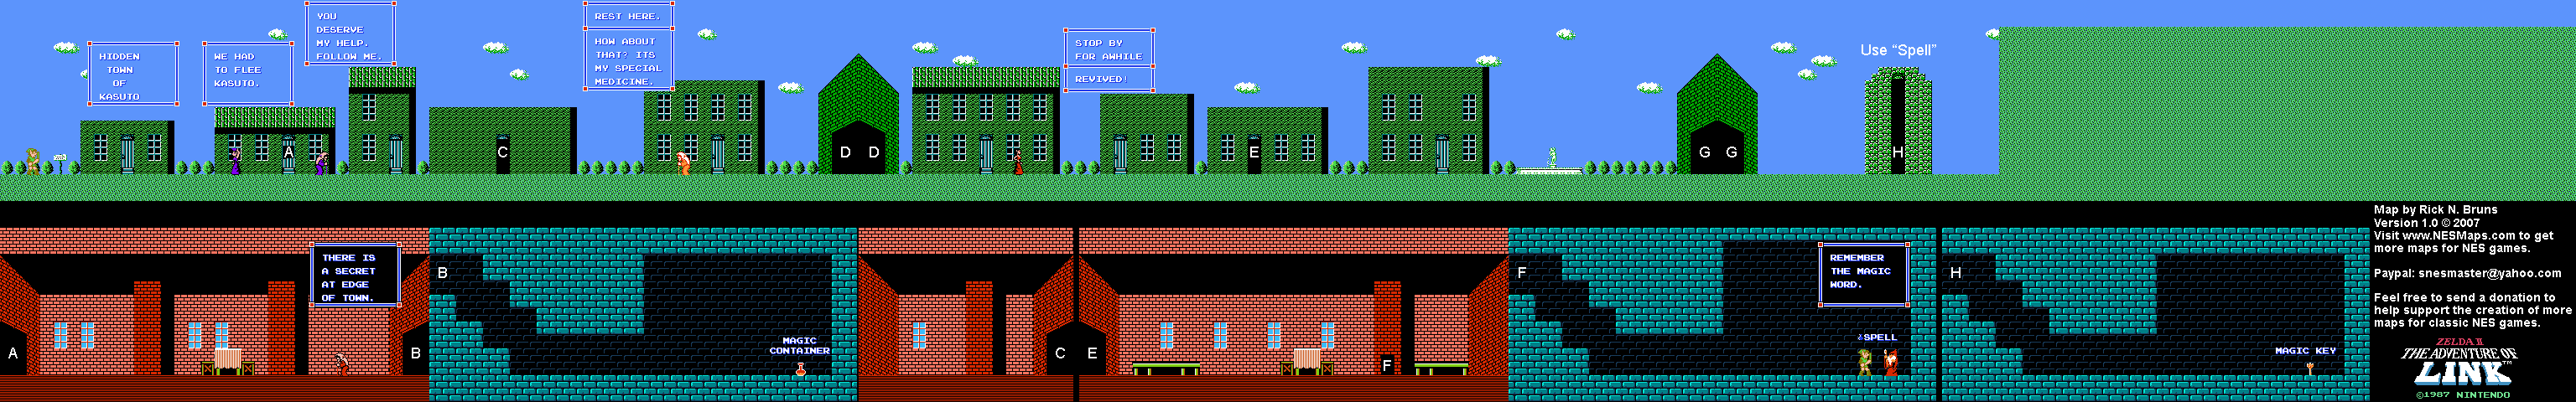 Zelda II The Adventure of Link - Hidden Town of Kasuto [35] - NES Map